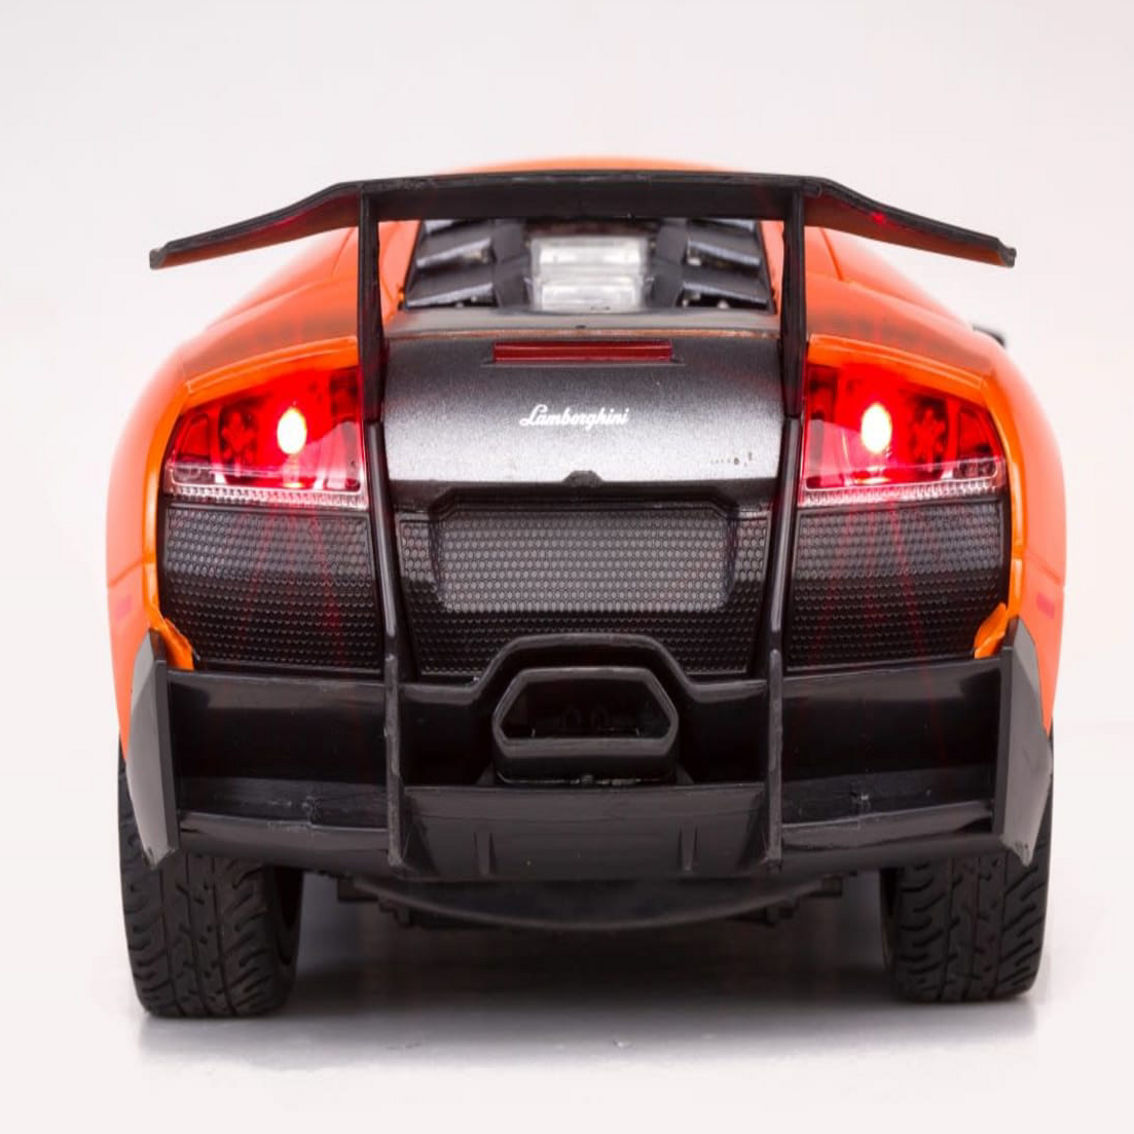 38900-O R/C 1:14 Lamborghini Murcielago LP670-4 - Orange - Image 5 of 5